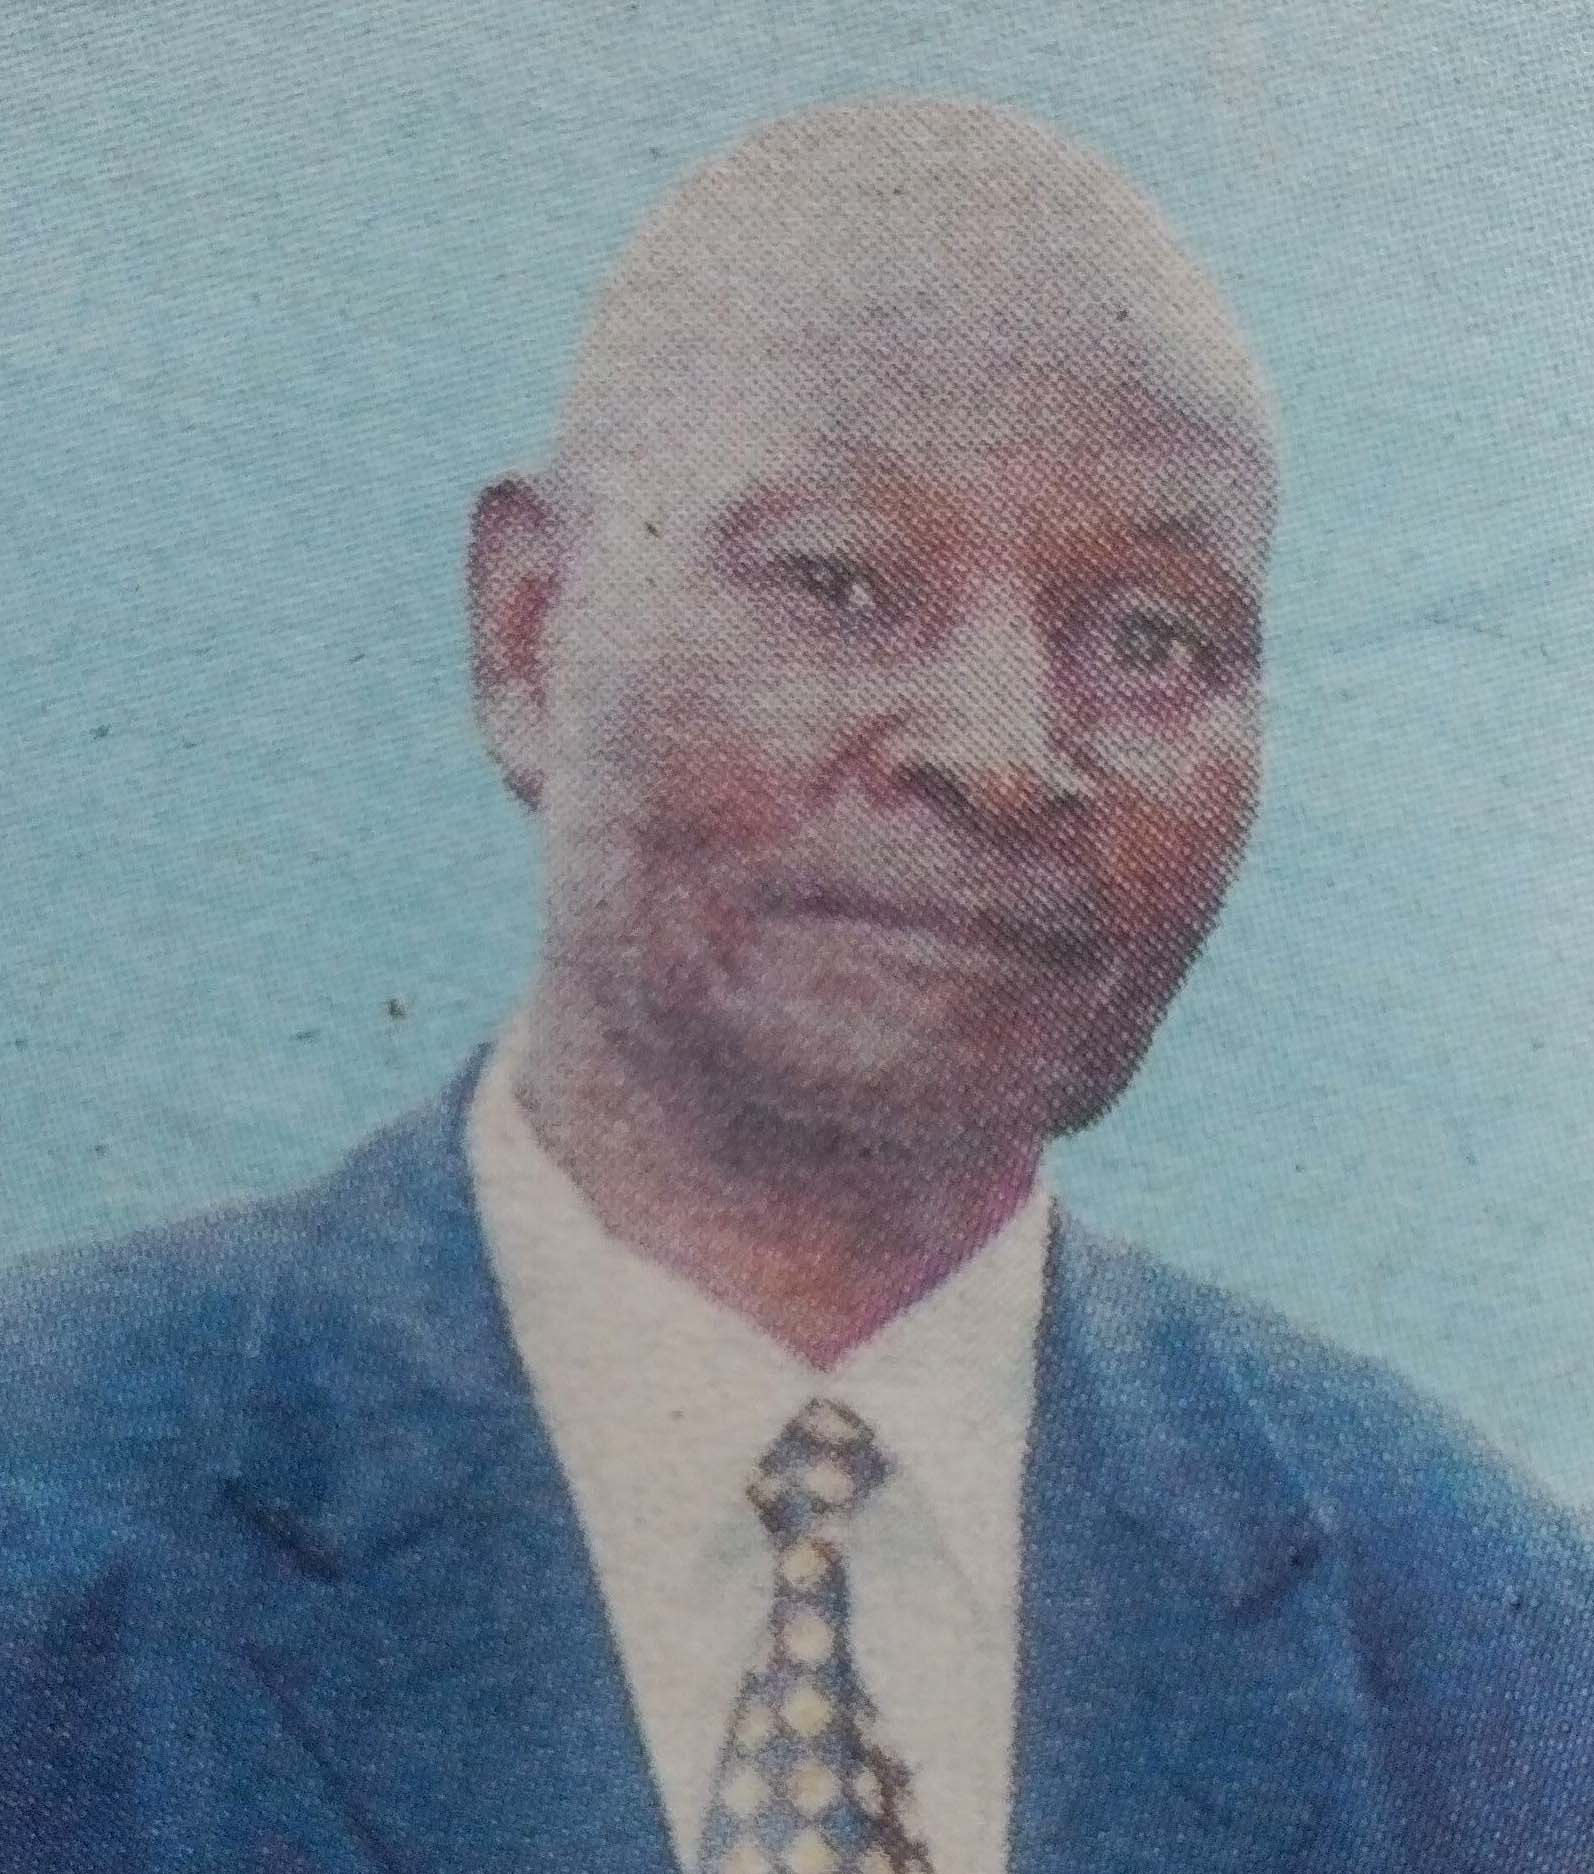 Obituary Image of Mwalimu Joe Ephraim Kimani Kiongo